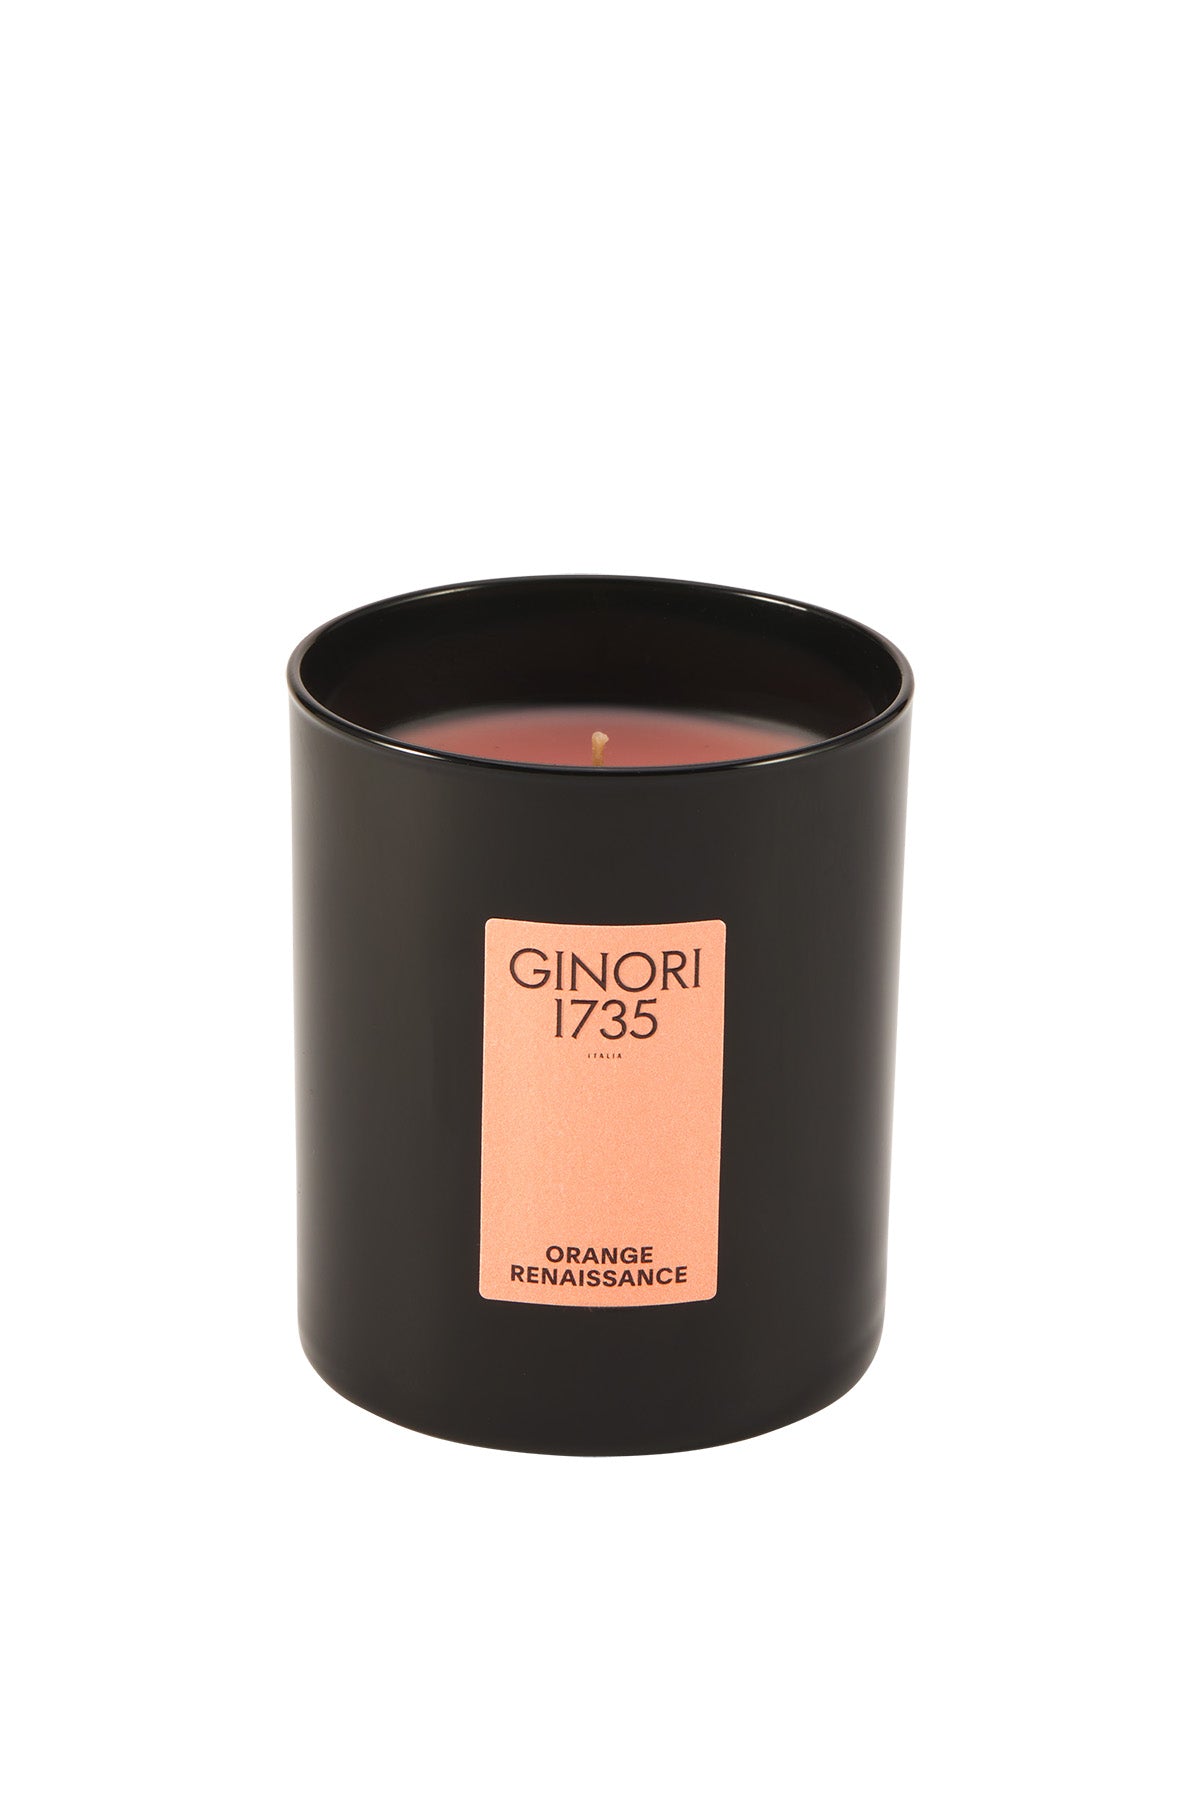 Ginori 1735 orange renaissance scented candle refill for il seguace 190 gr-1